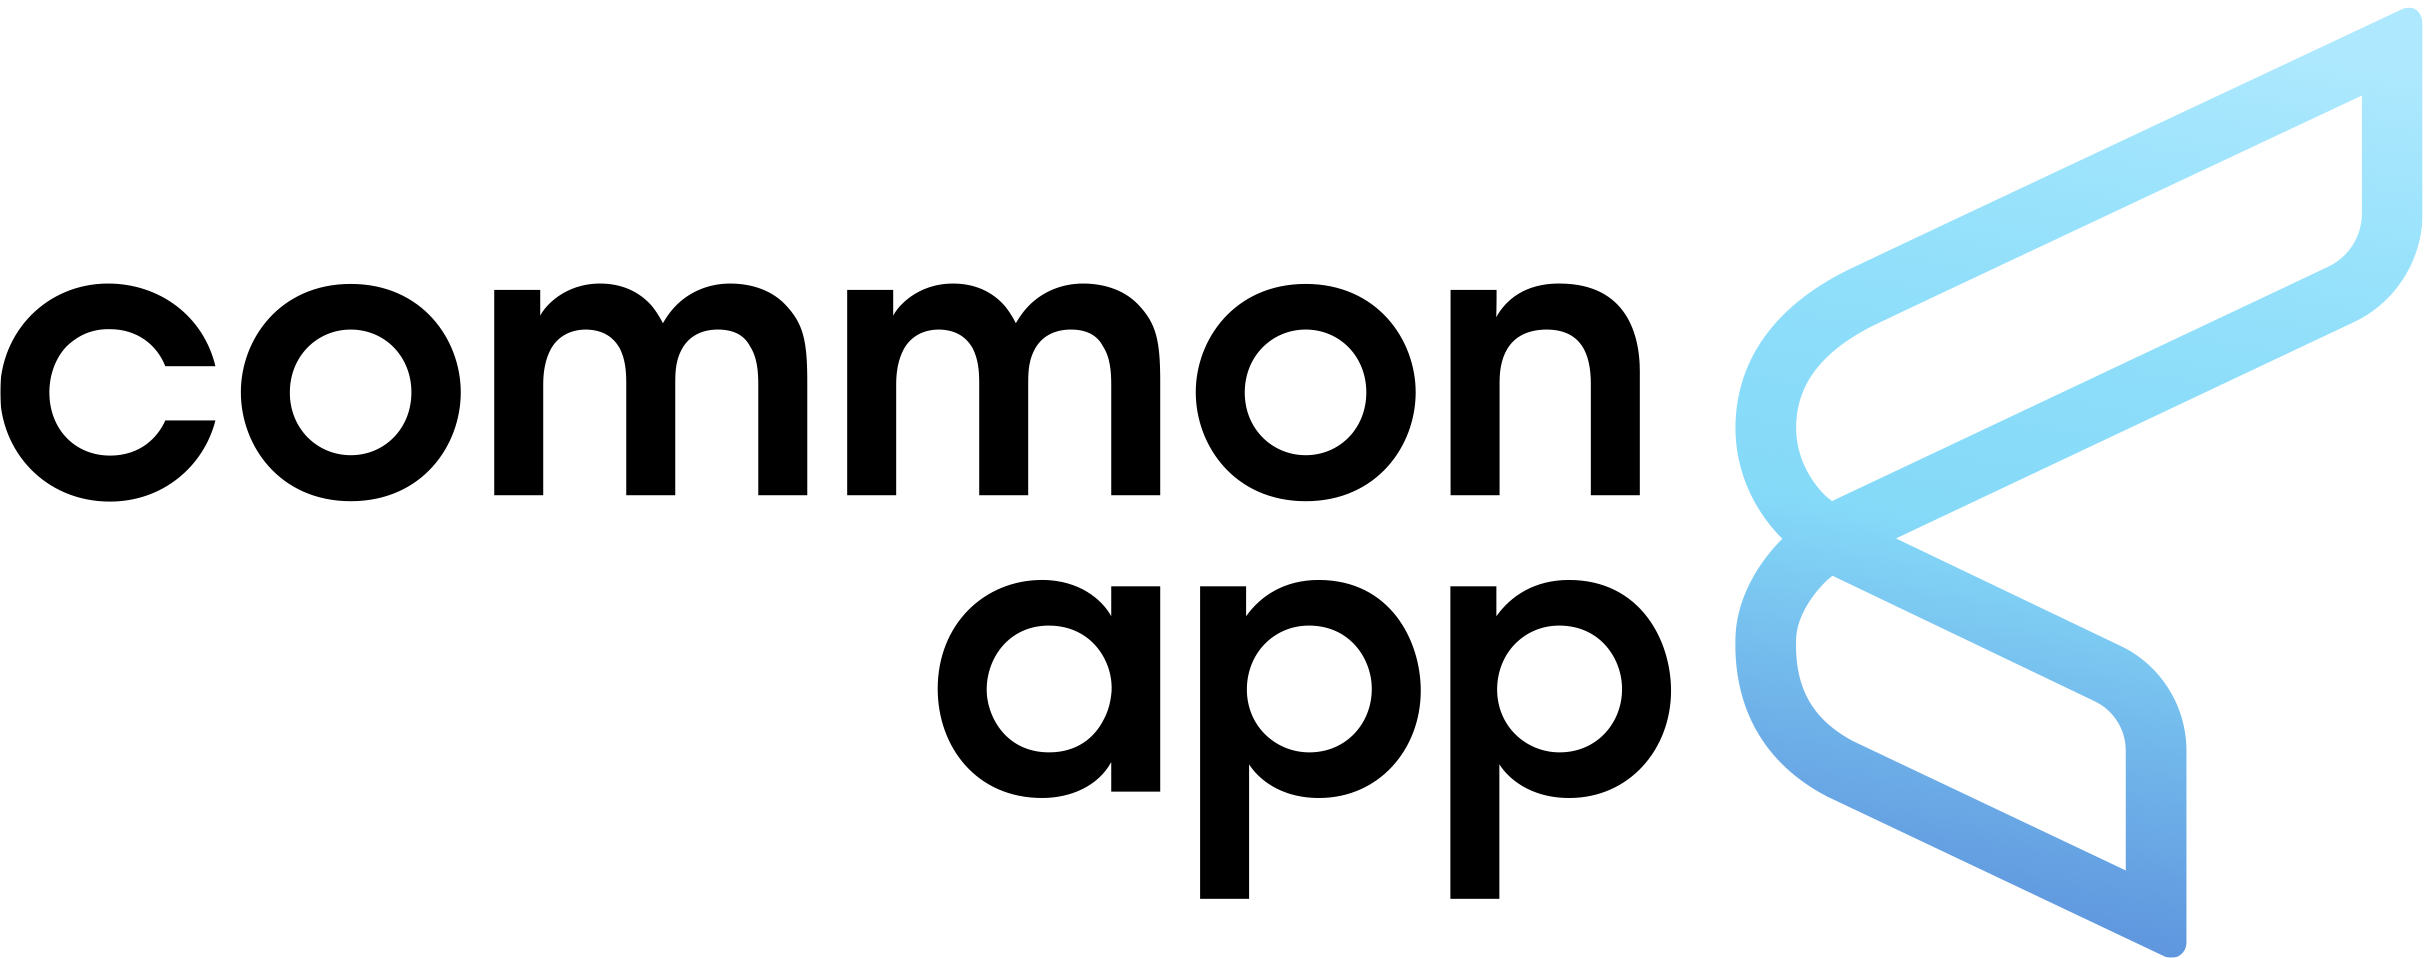 common app prompts 22 23